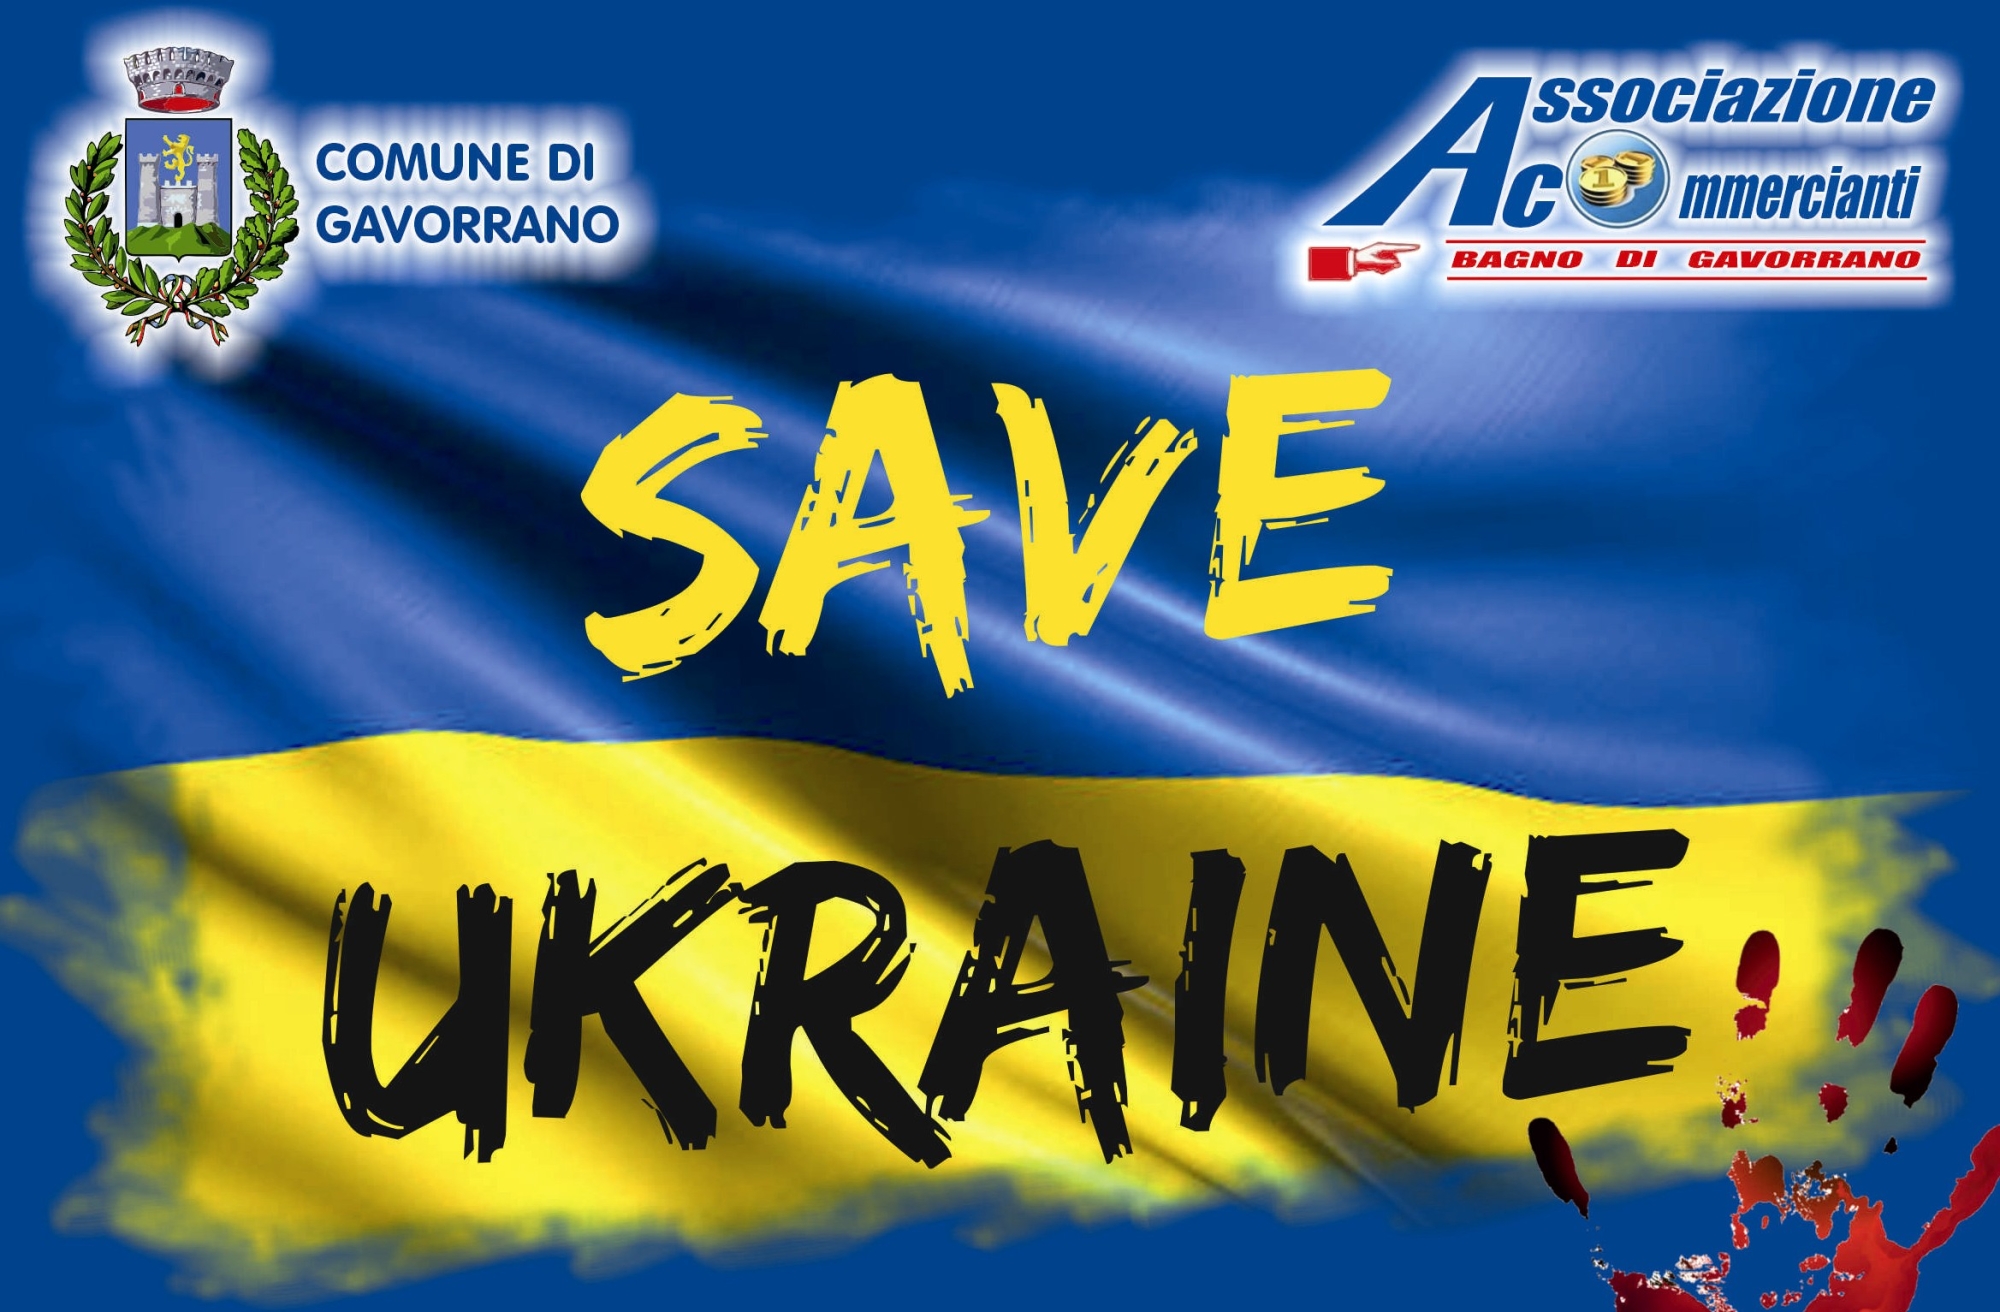 Save Ukraine